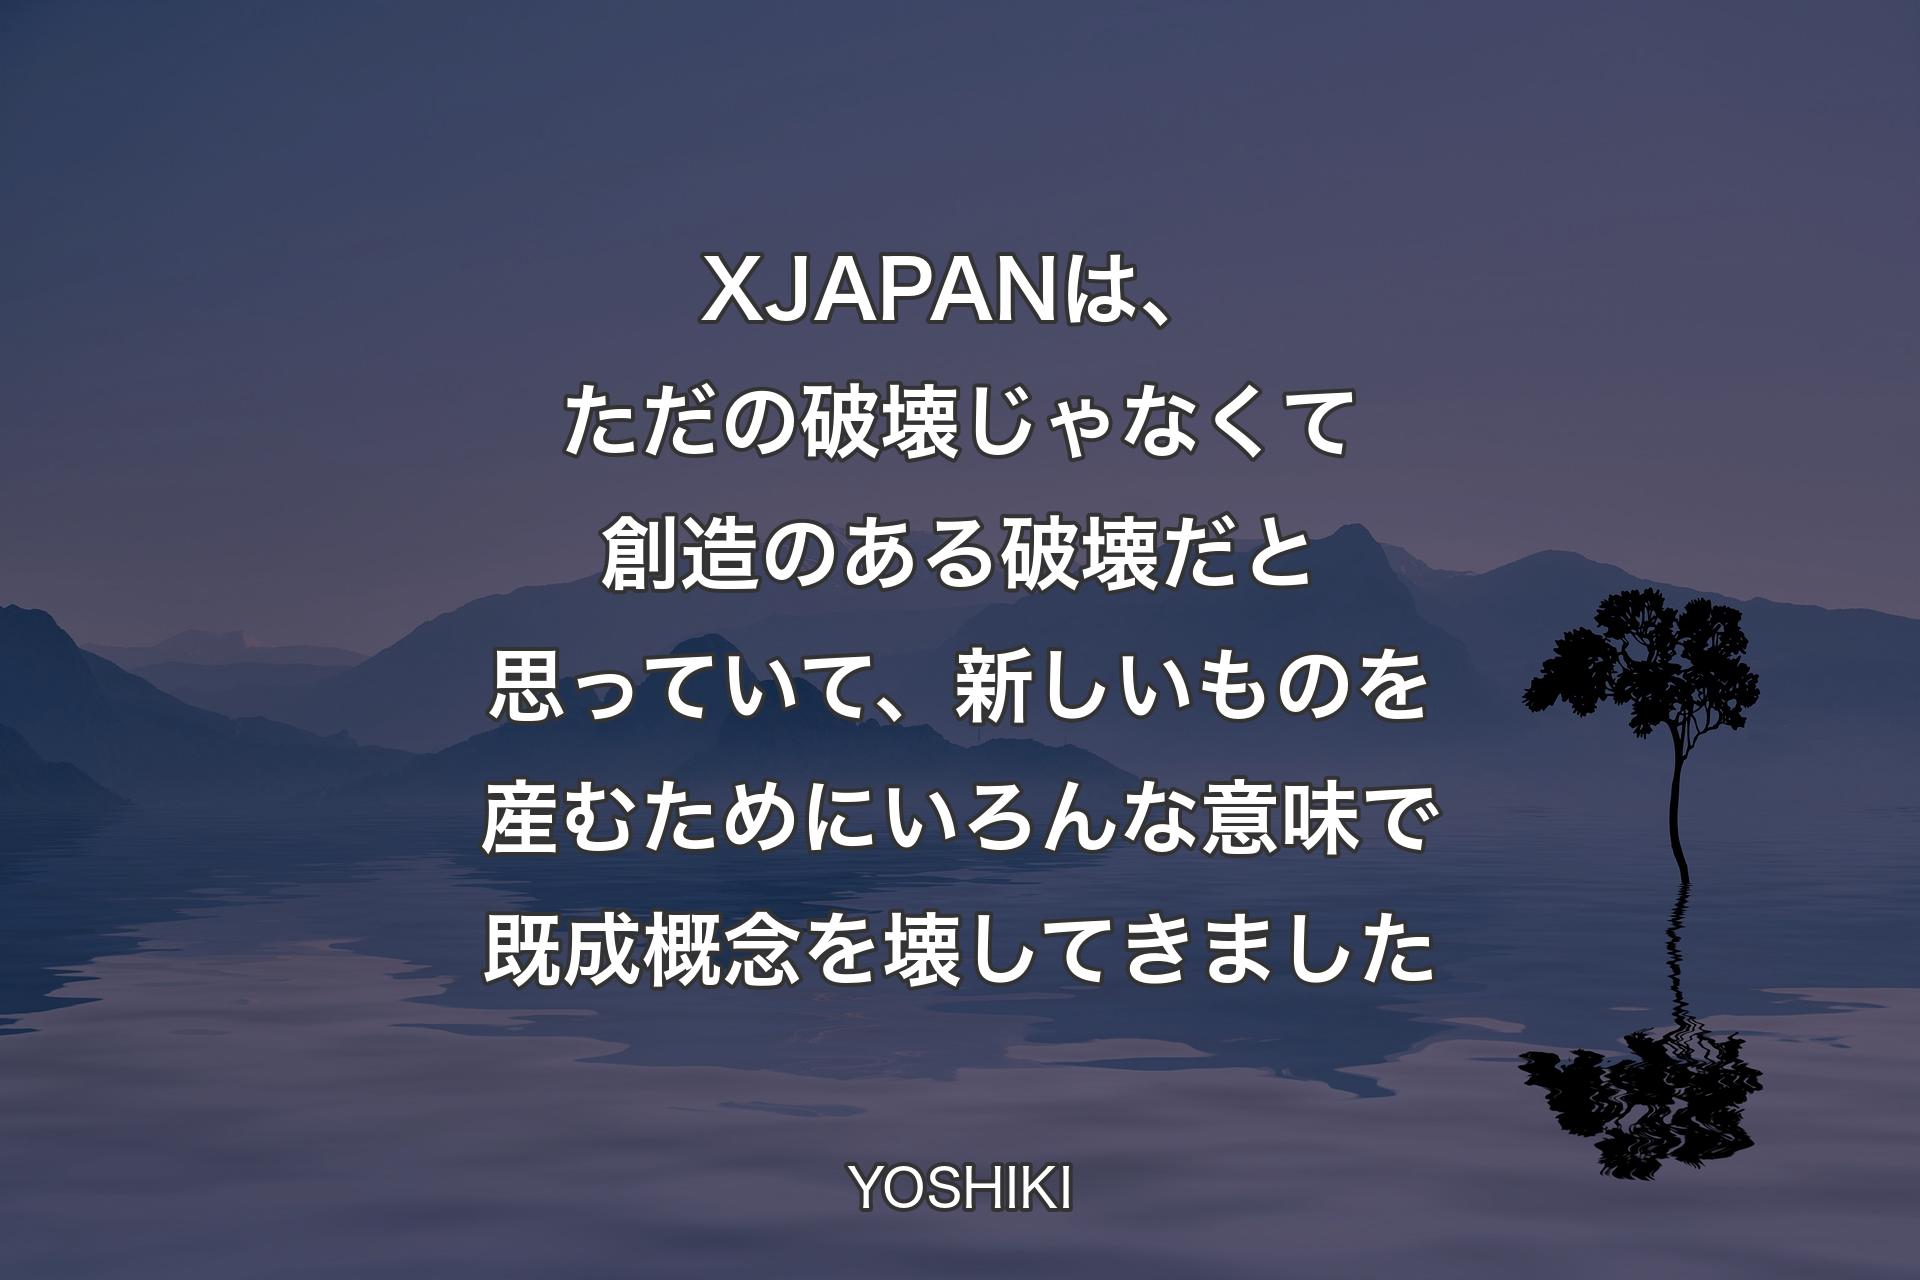 【背景4】X JAPANは、ただの破壊じゃなくて創造のある破壊だと思っていて、新しいものを産むためにいろんな意味で既成概念を壊してきました - YOSHIKI